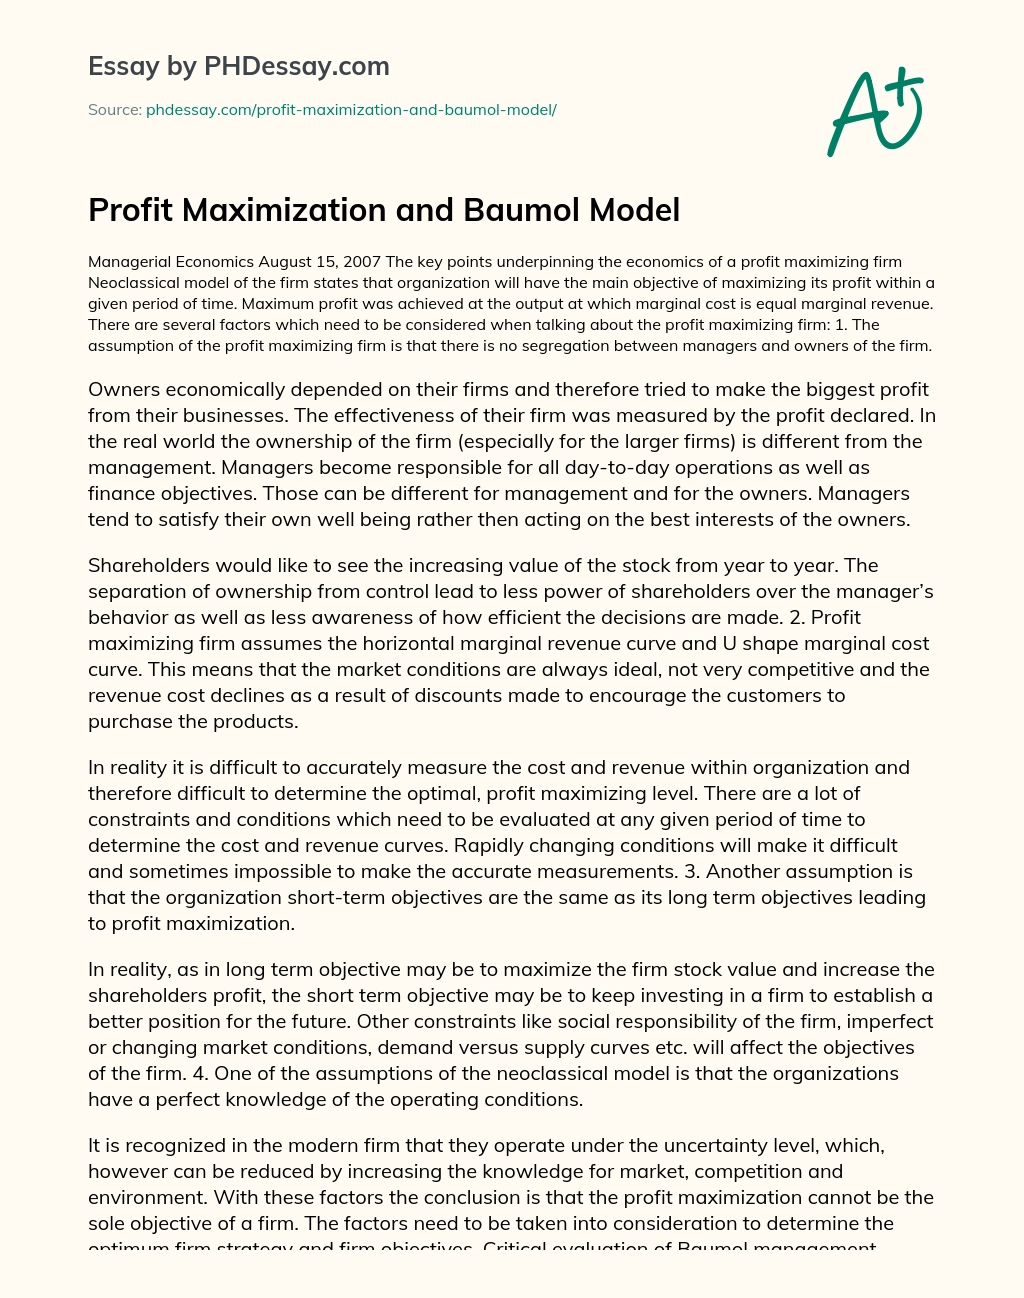 Profit Maximization and Baumol Model essay